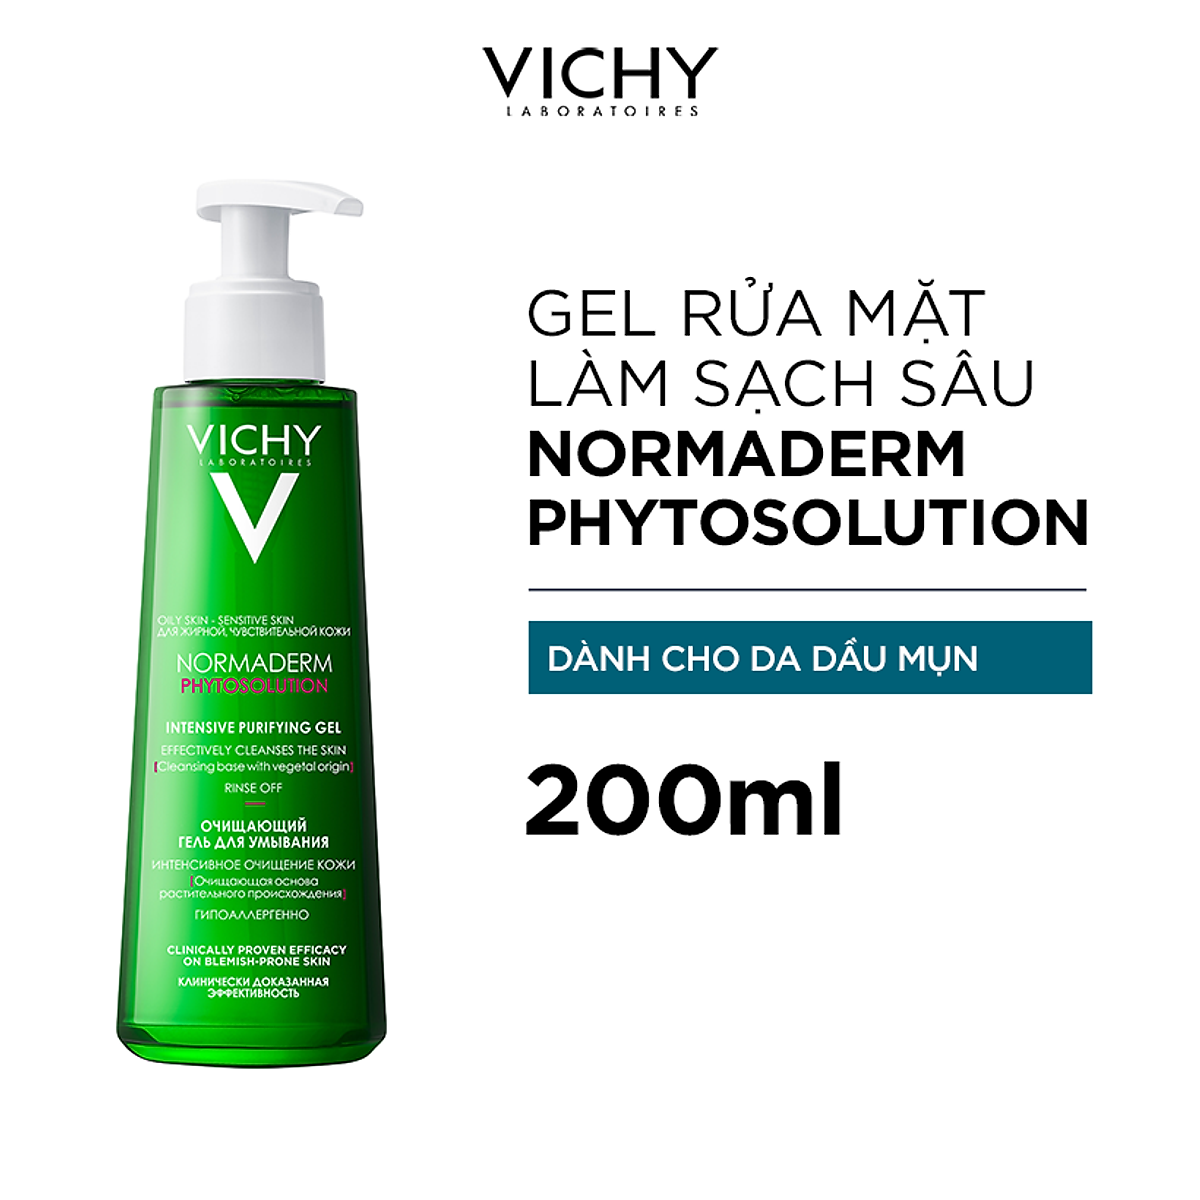 Sữa rửa mặt dạng gel làm sạch sâu giảm bã nhờn Vichy Normaderm Phytosolution 200ml